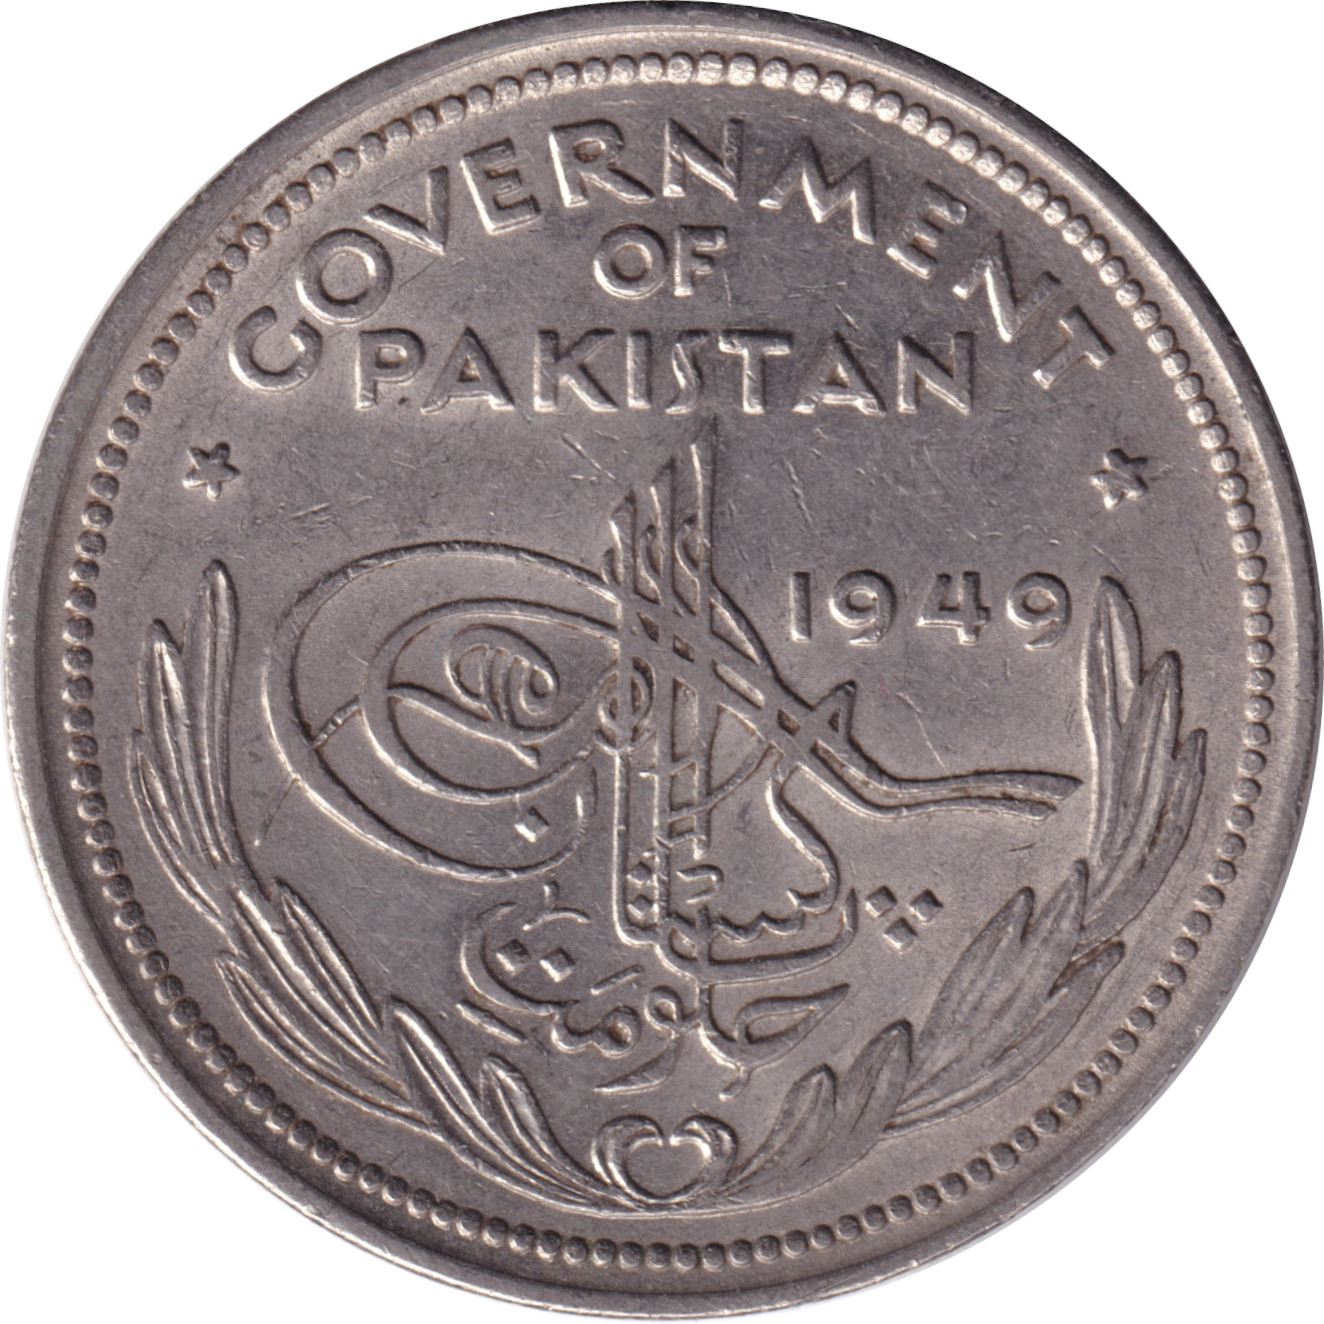 1 rupee - Emblème